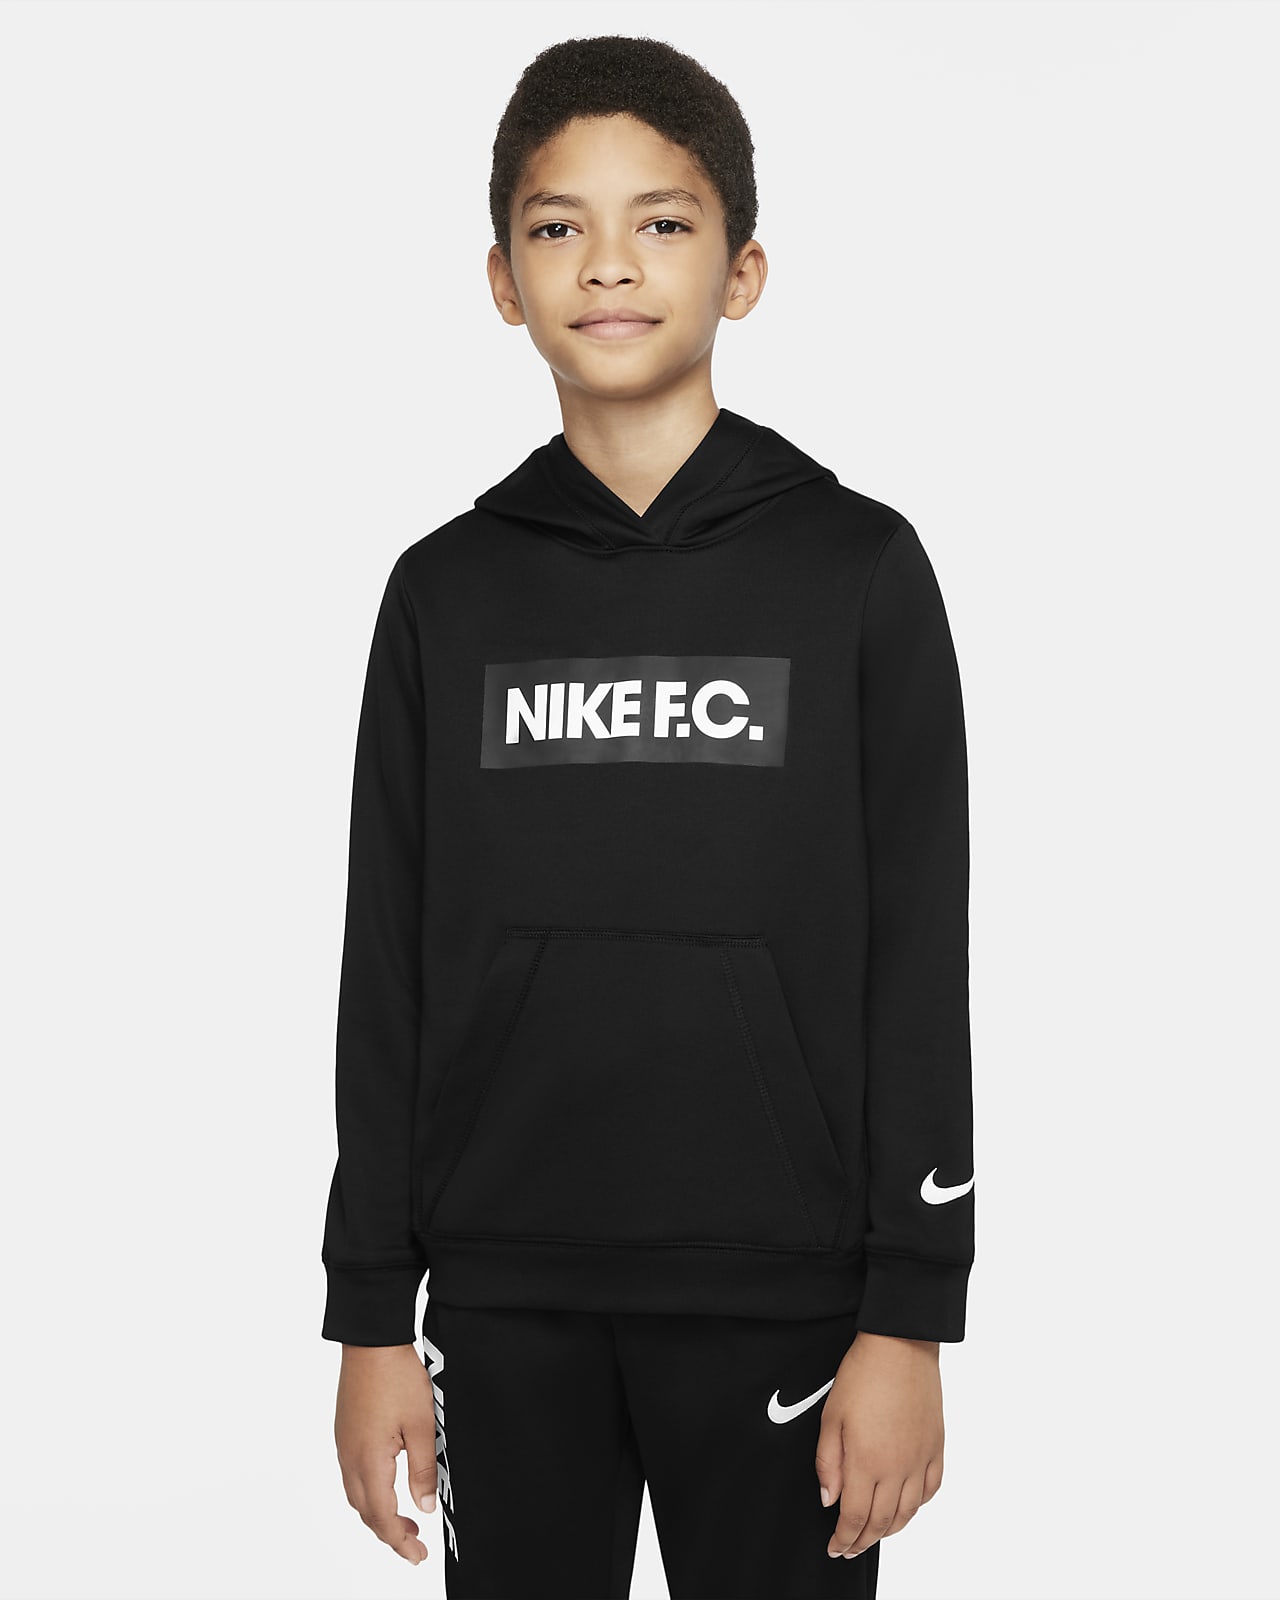 Nike F.C. Big Kids' Soccer Hoodie